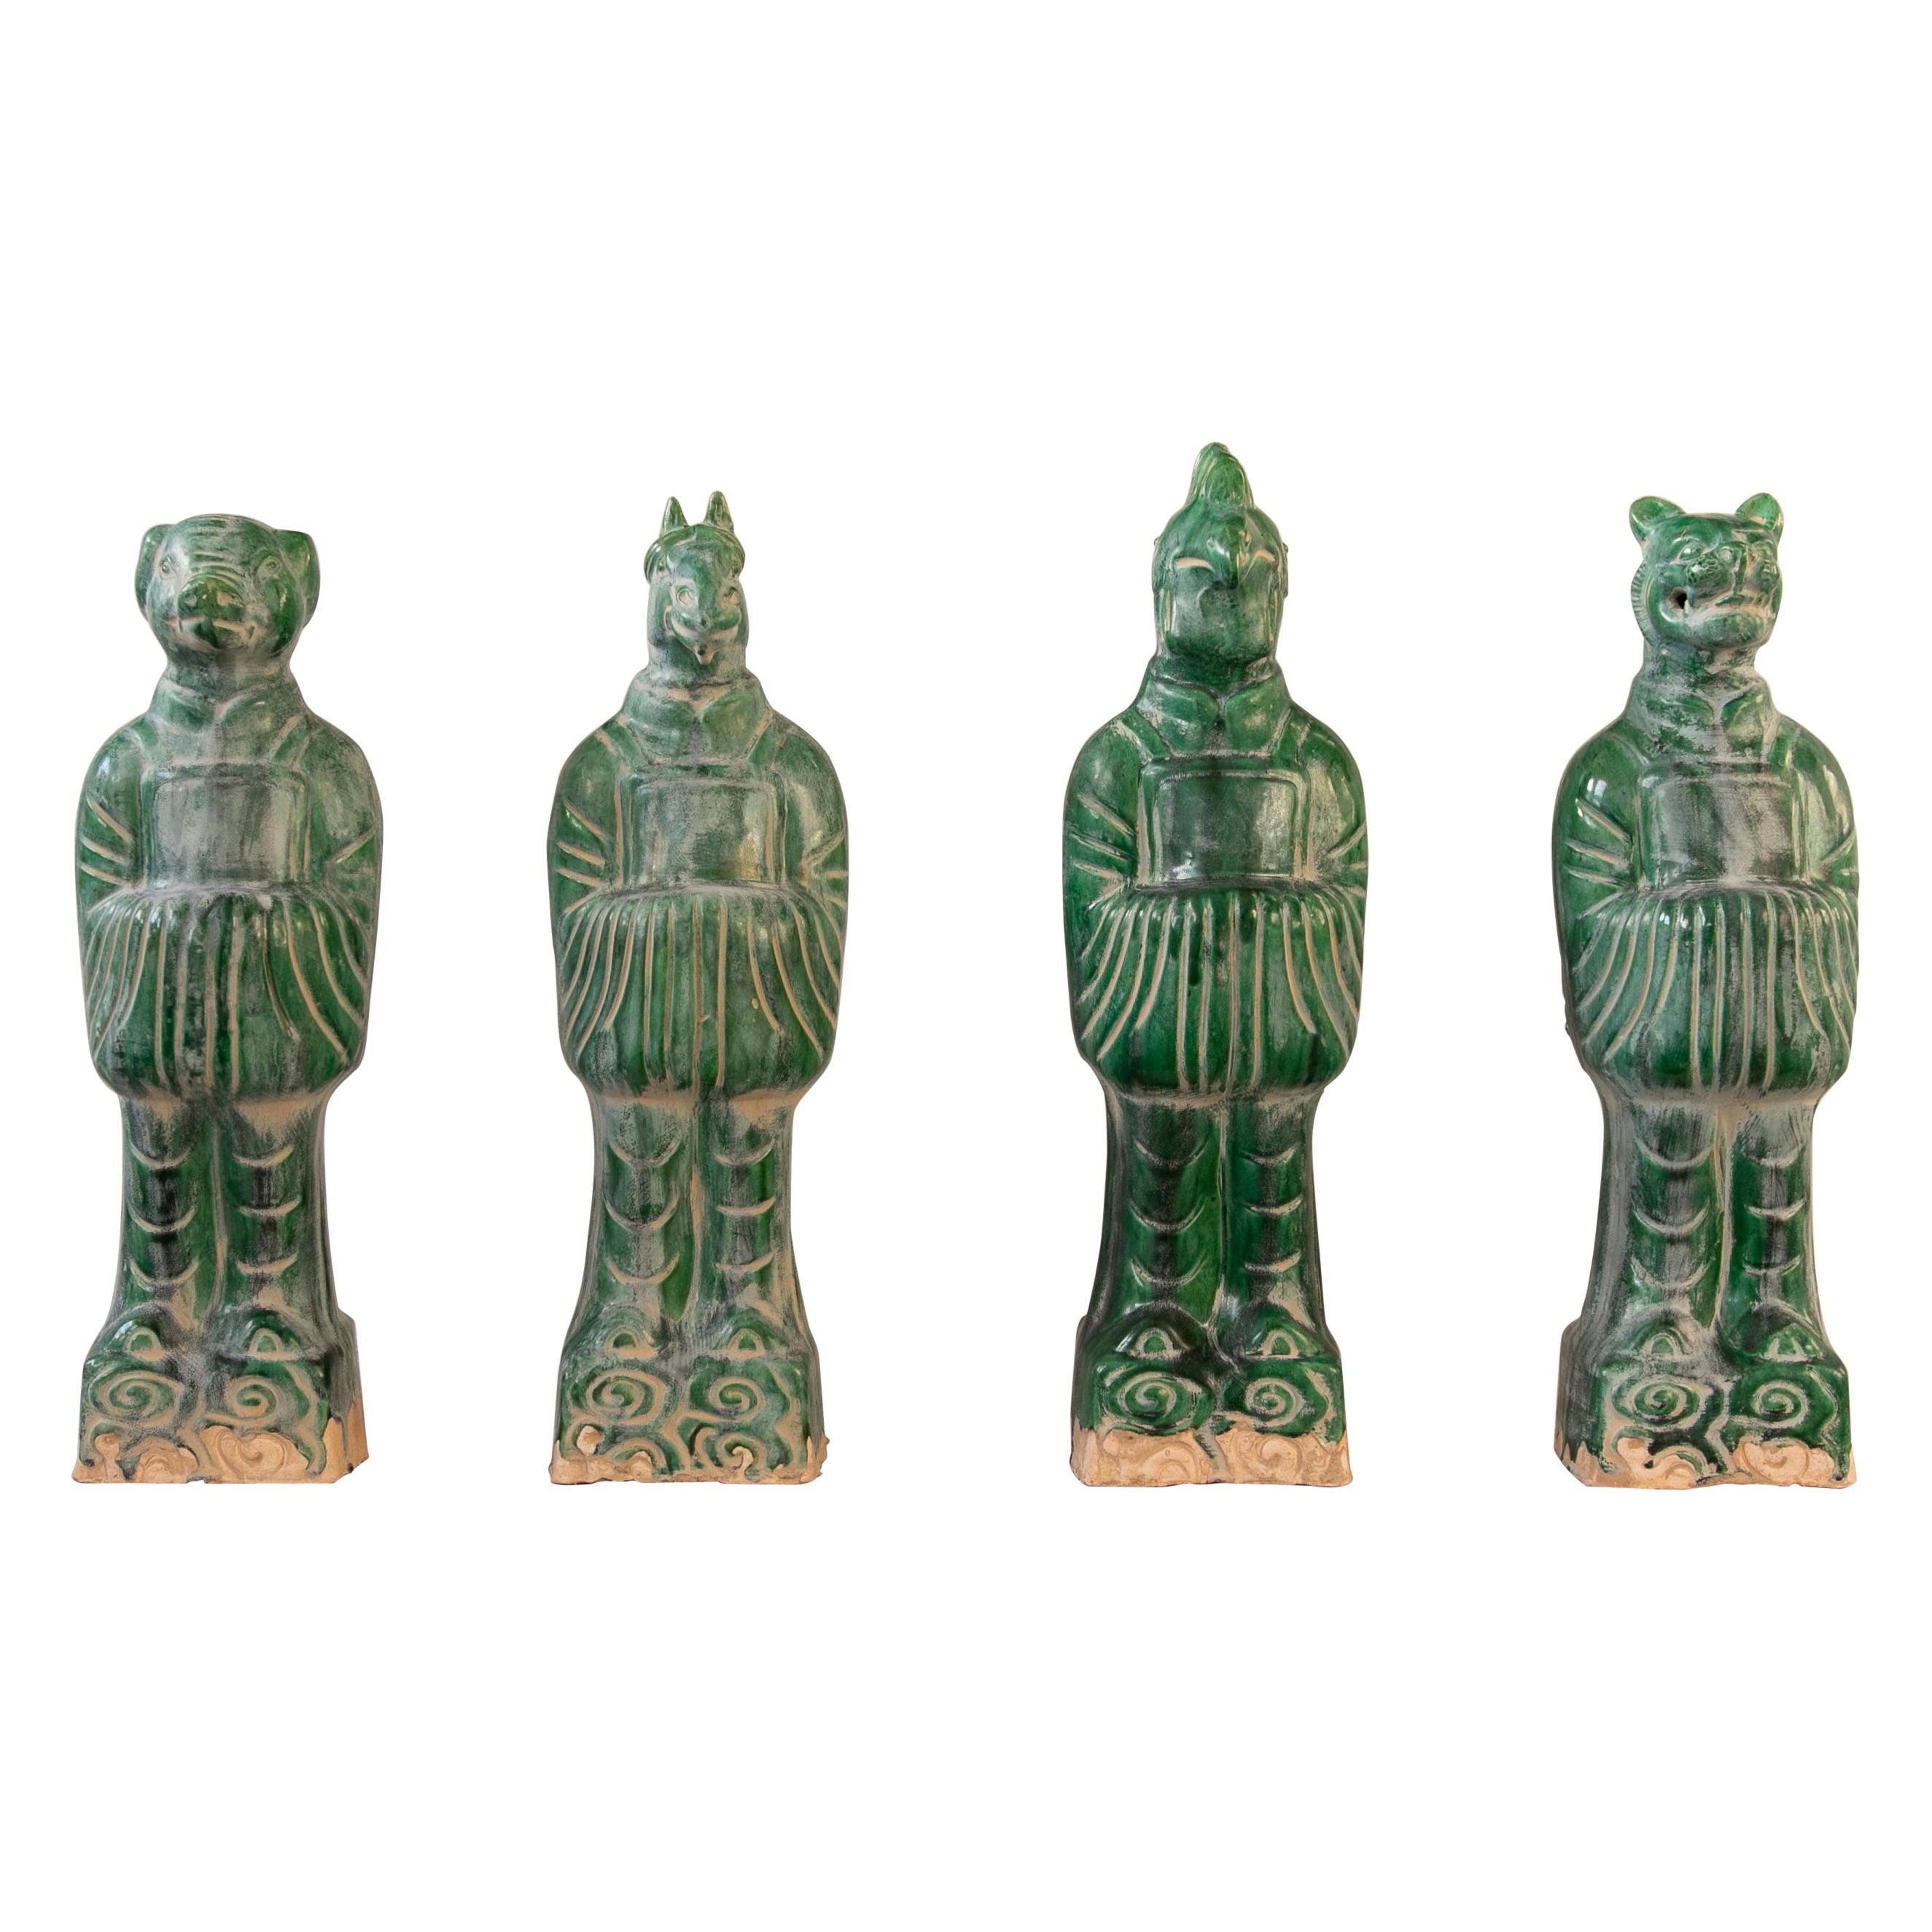 Ensemble de quatre dieux mythologiques chinois en terre cuite émaillée verte